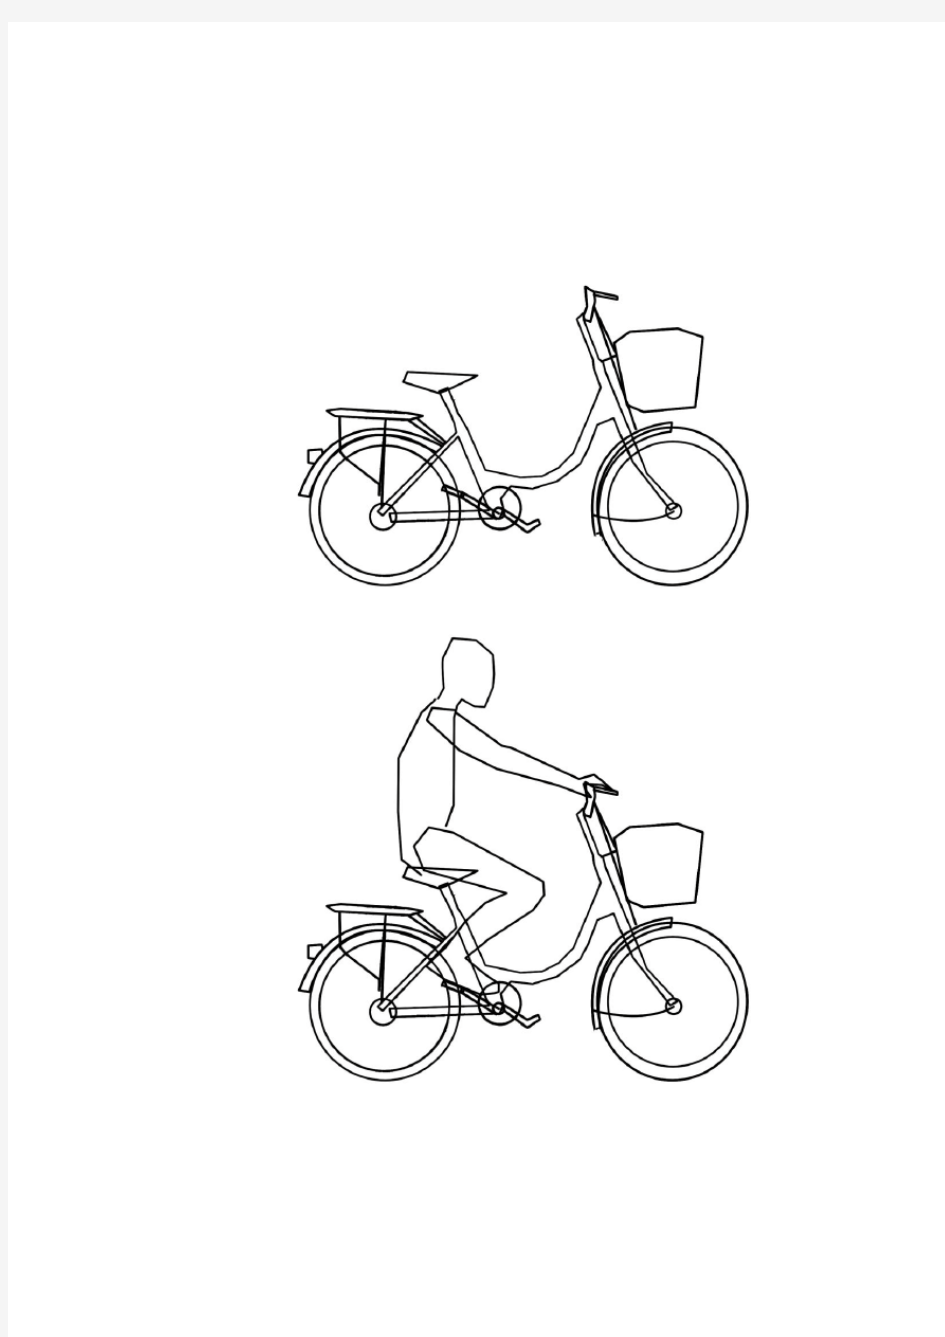 人—自行车人机工程设计案例分析